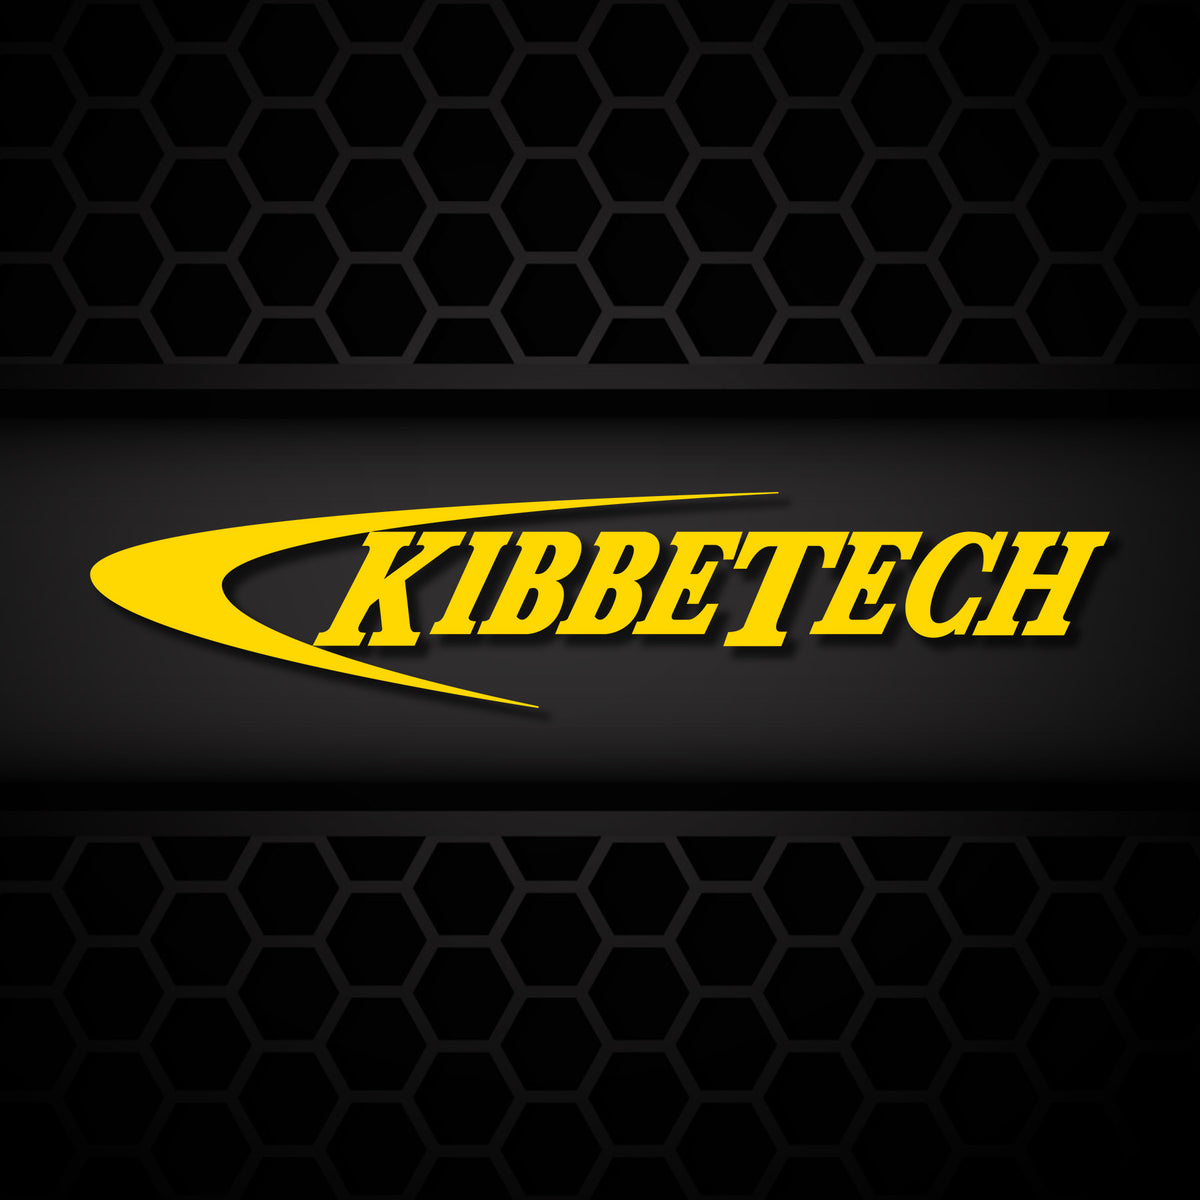 Kibbetech Offroad Fabrication